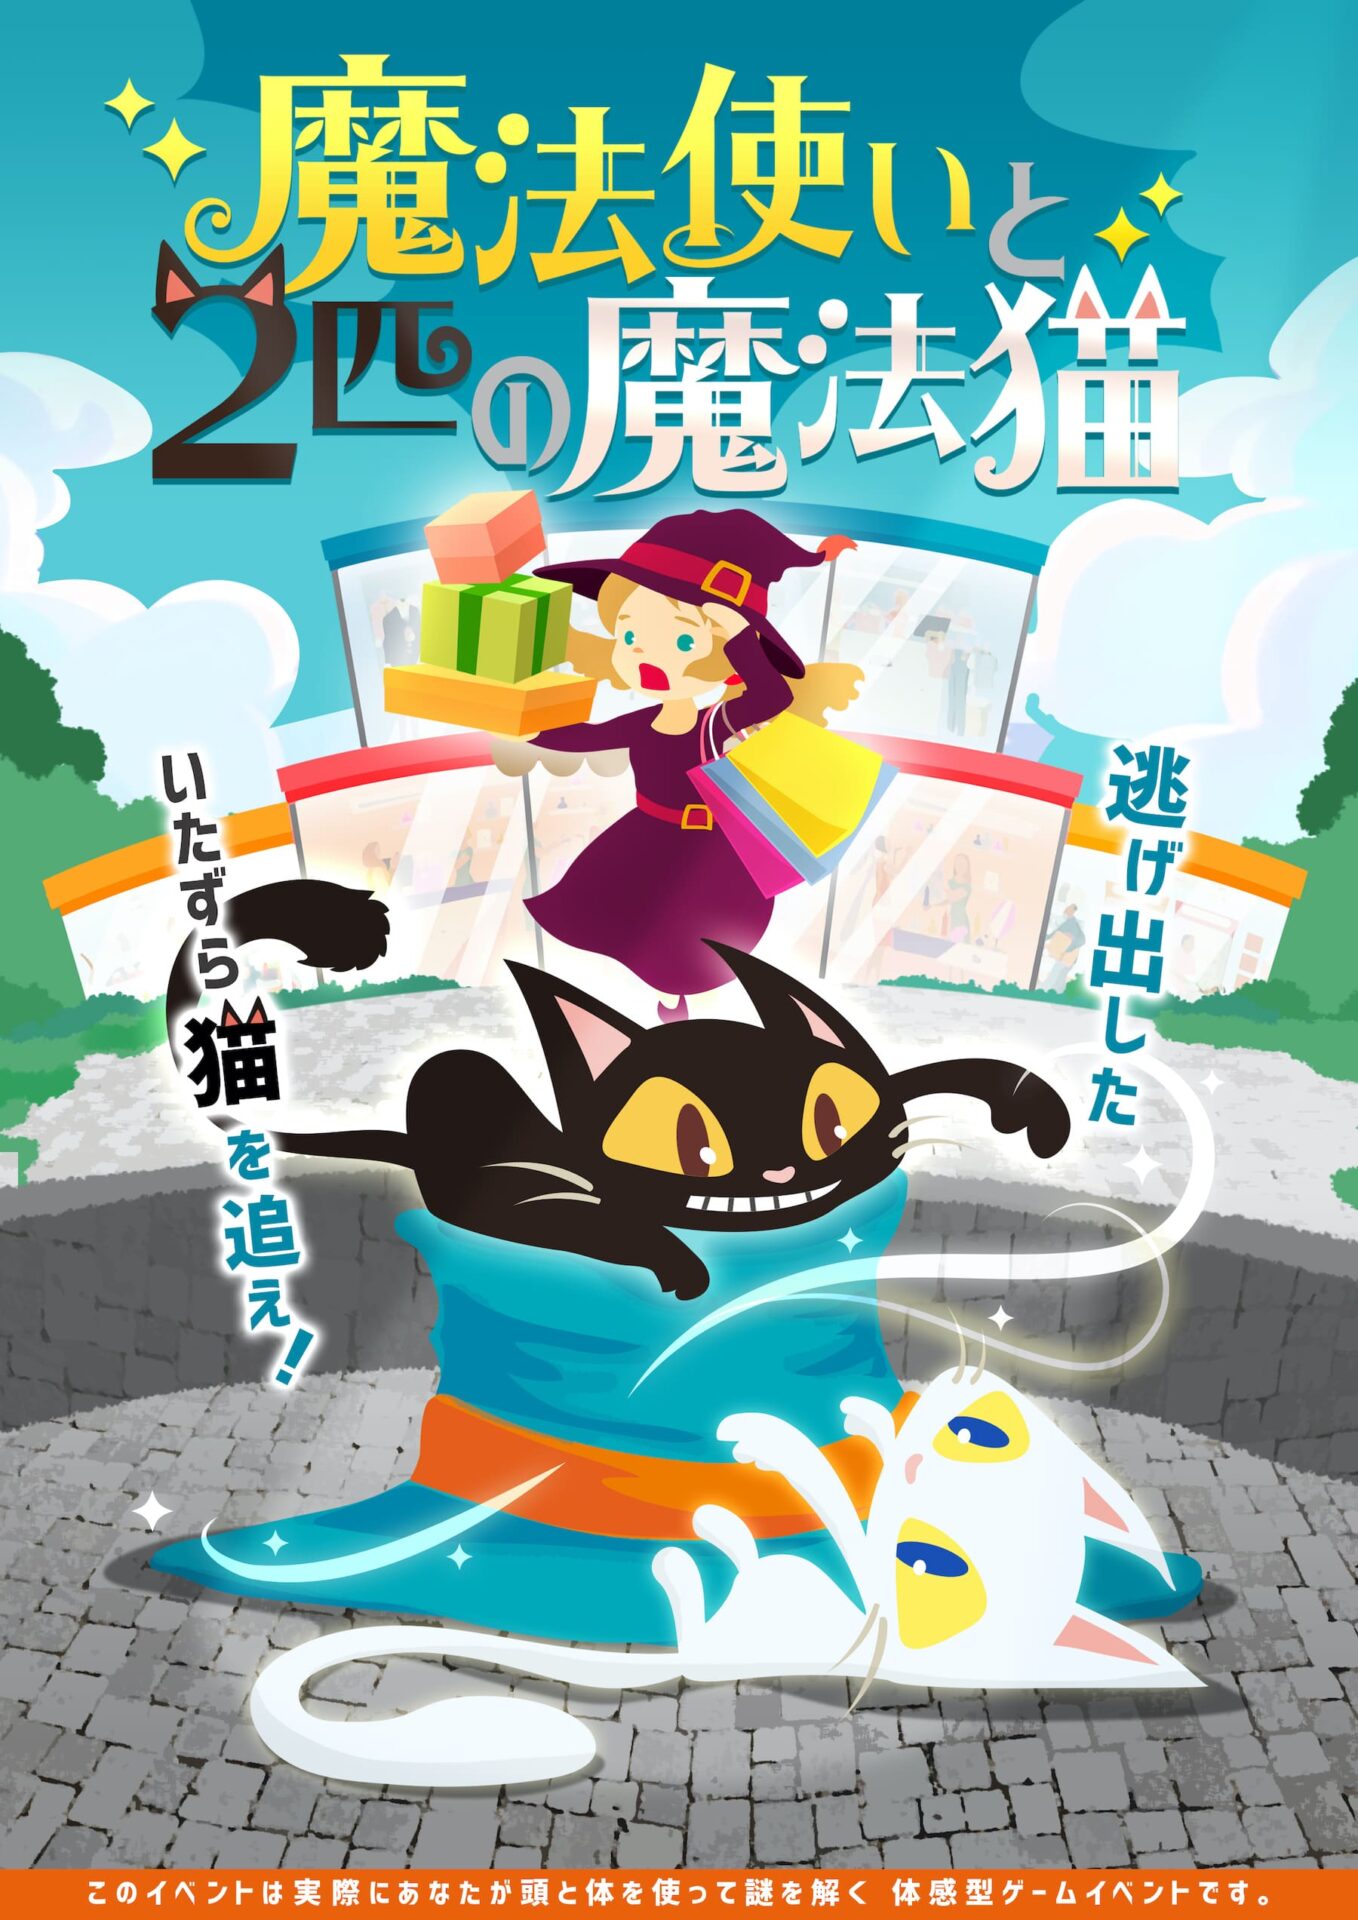 リアル謎解きゲーム『魔法使いと2匹の魔法猫』(東京 新宿)